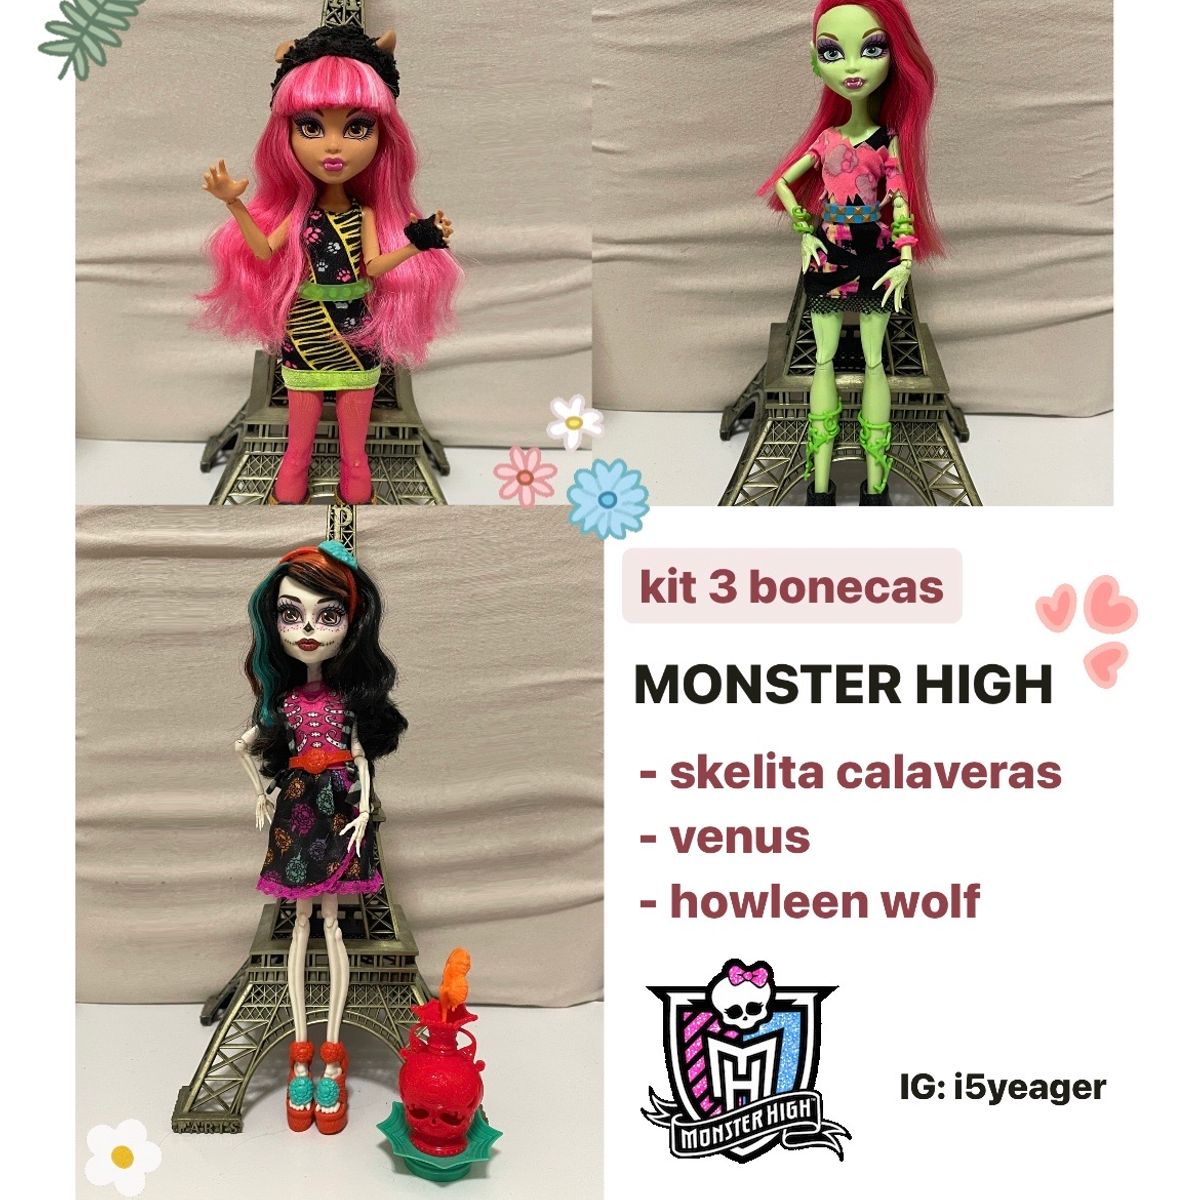 680 melhor ideia de Bonecas Monster High  bonecas monster high, monster  high, bonecas